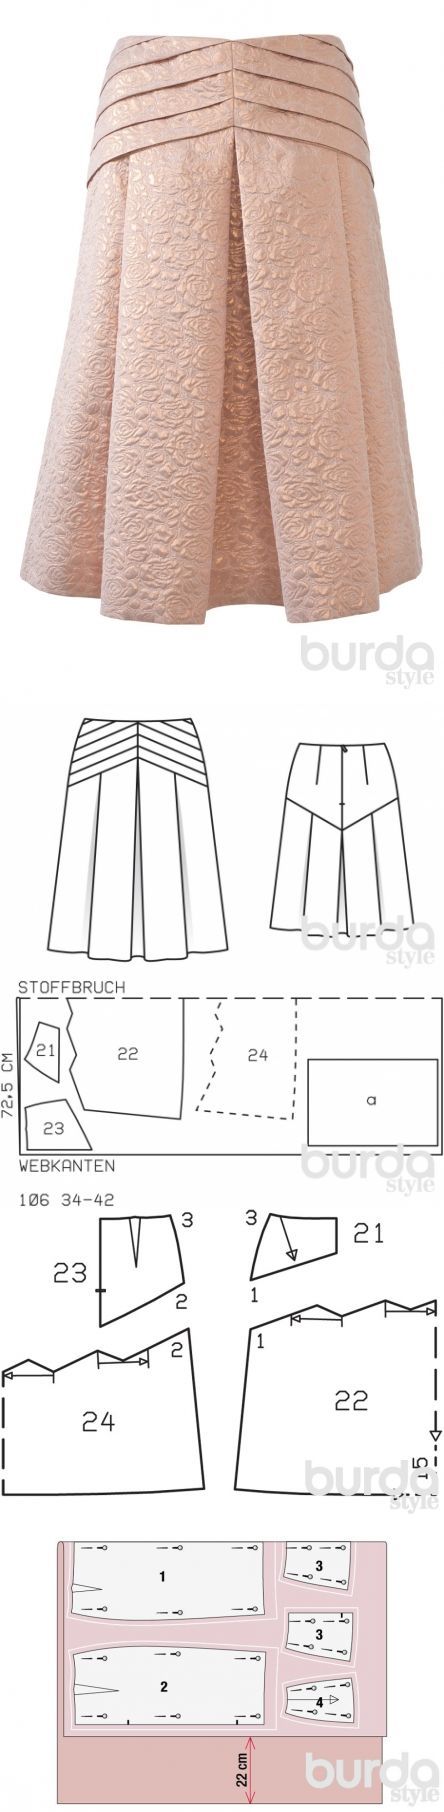 Создание выкройки юбки в складку